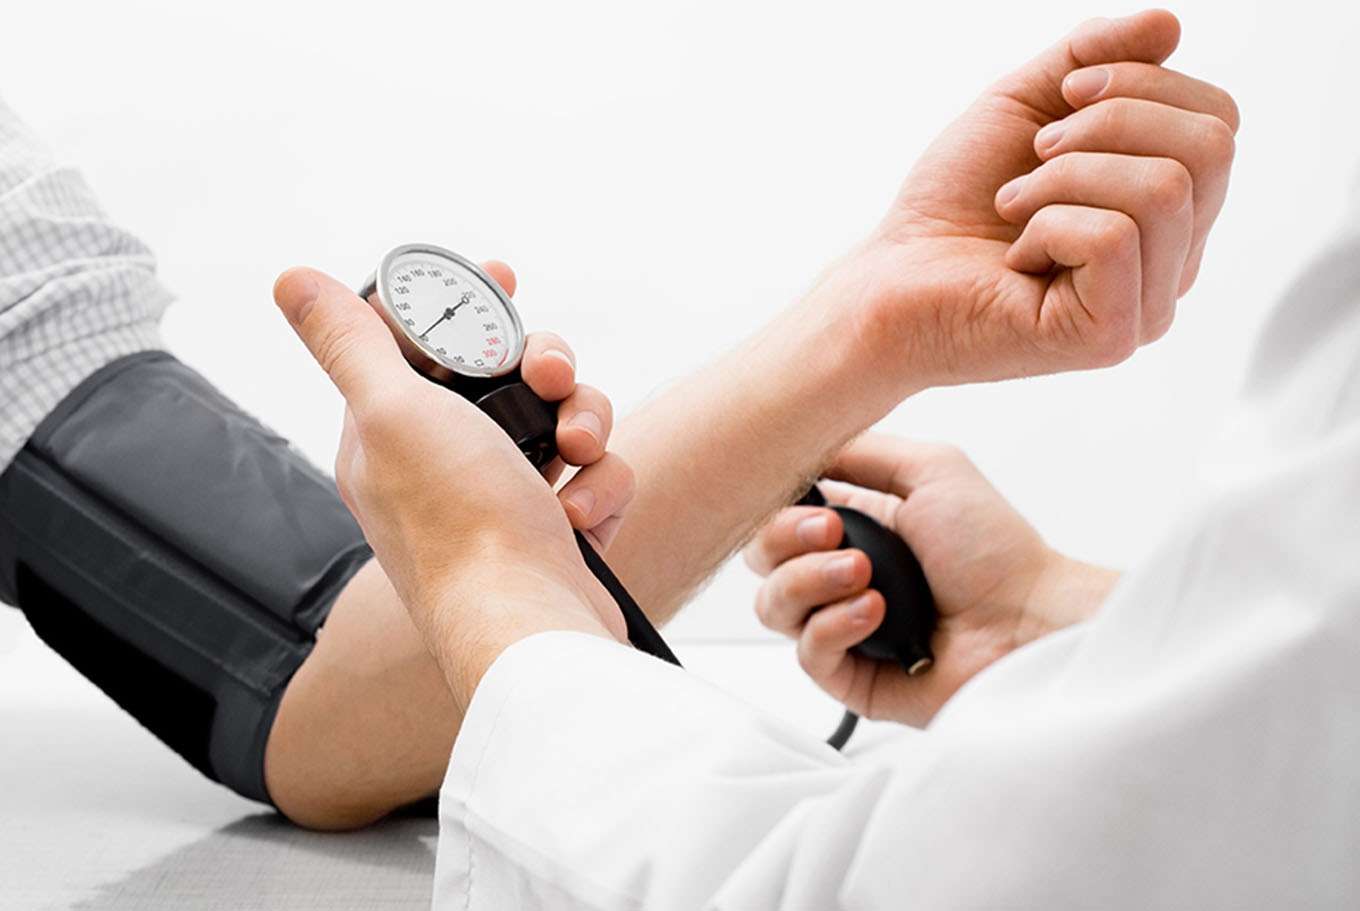 La hipertensión arterial es la primera causa de muerte prematura en el mundo